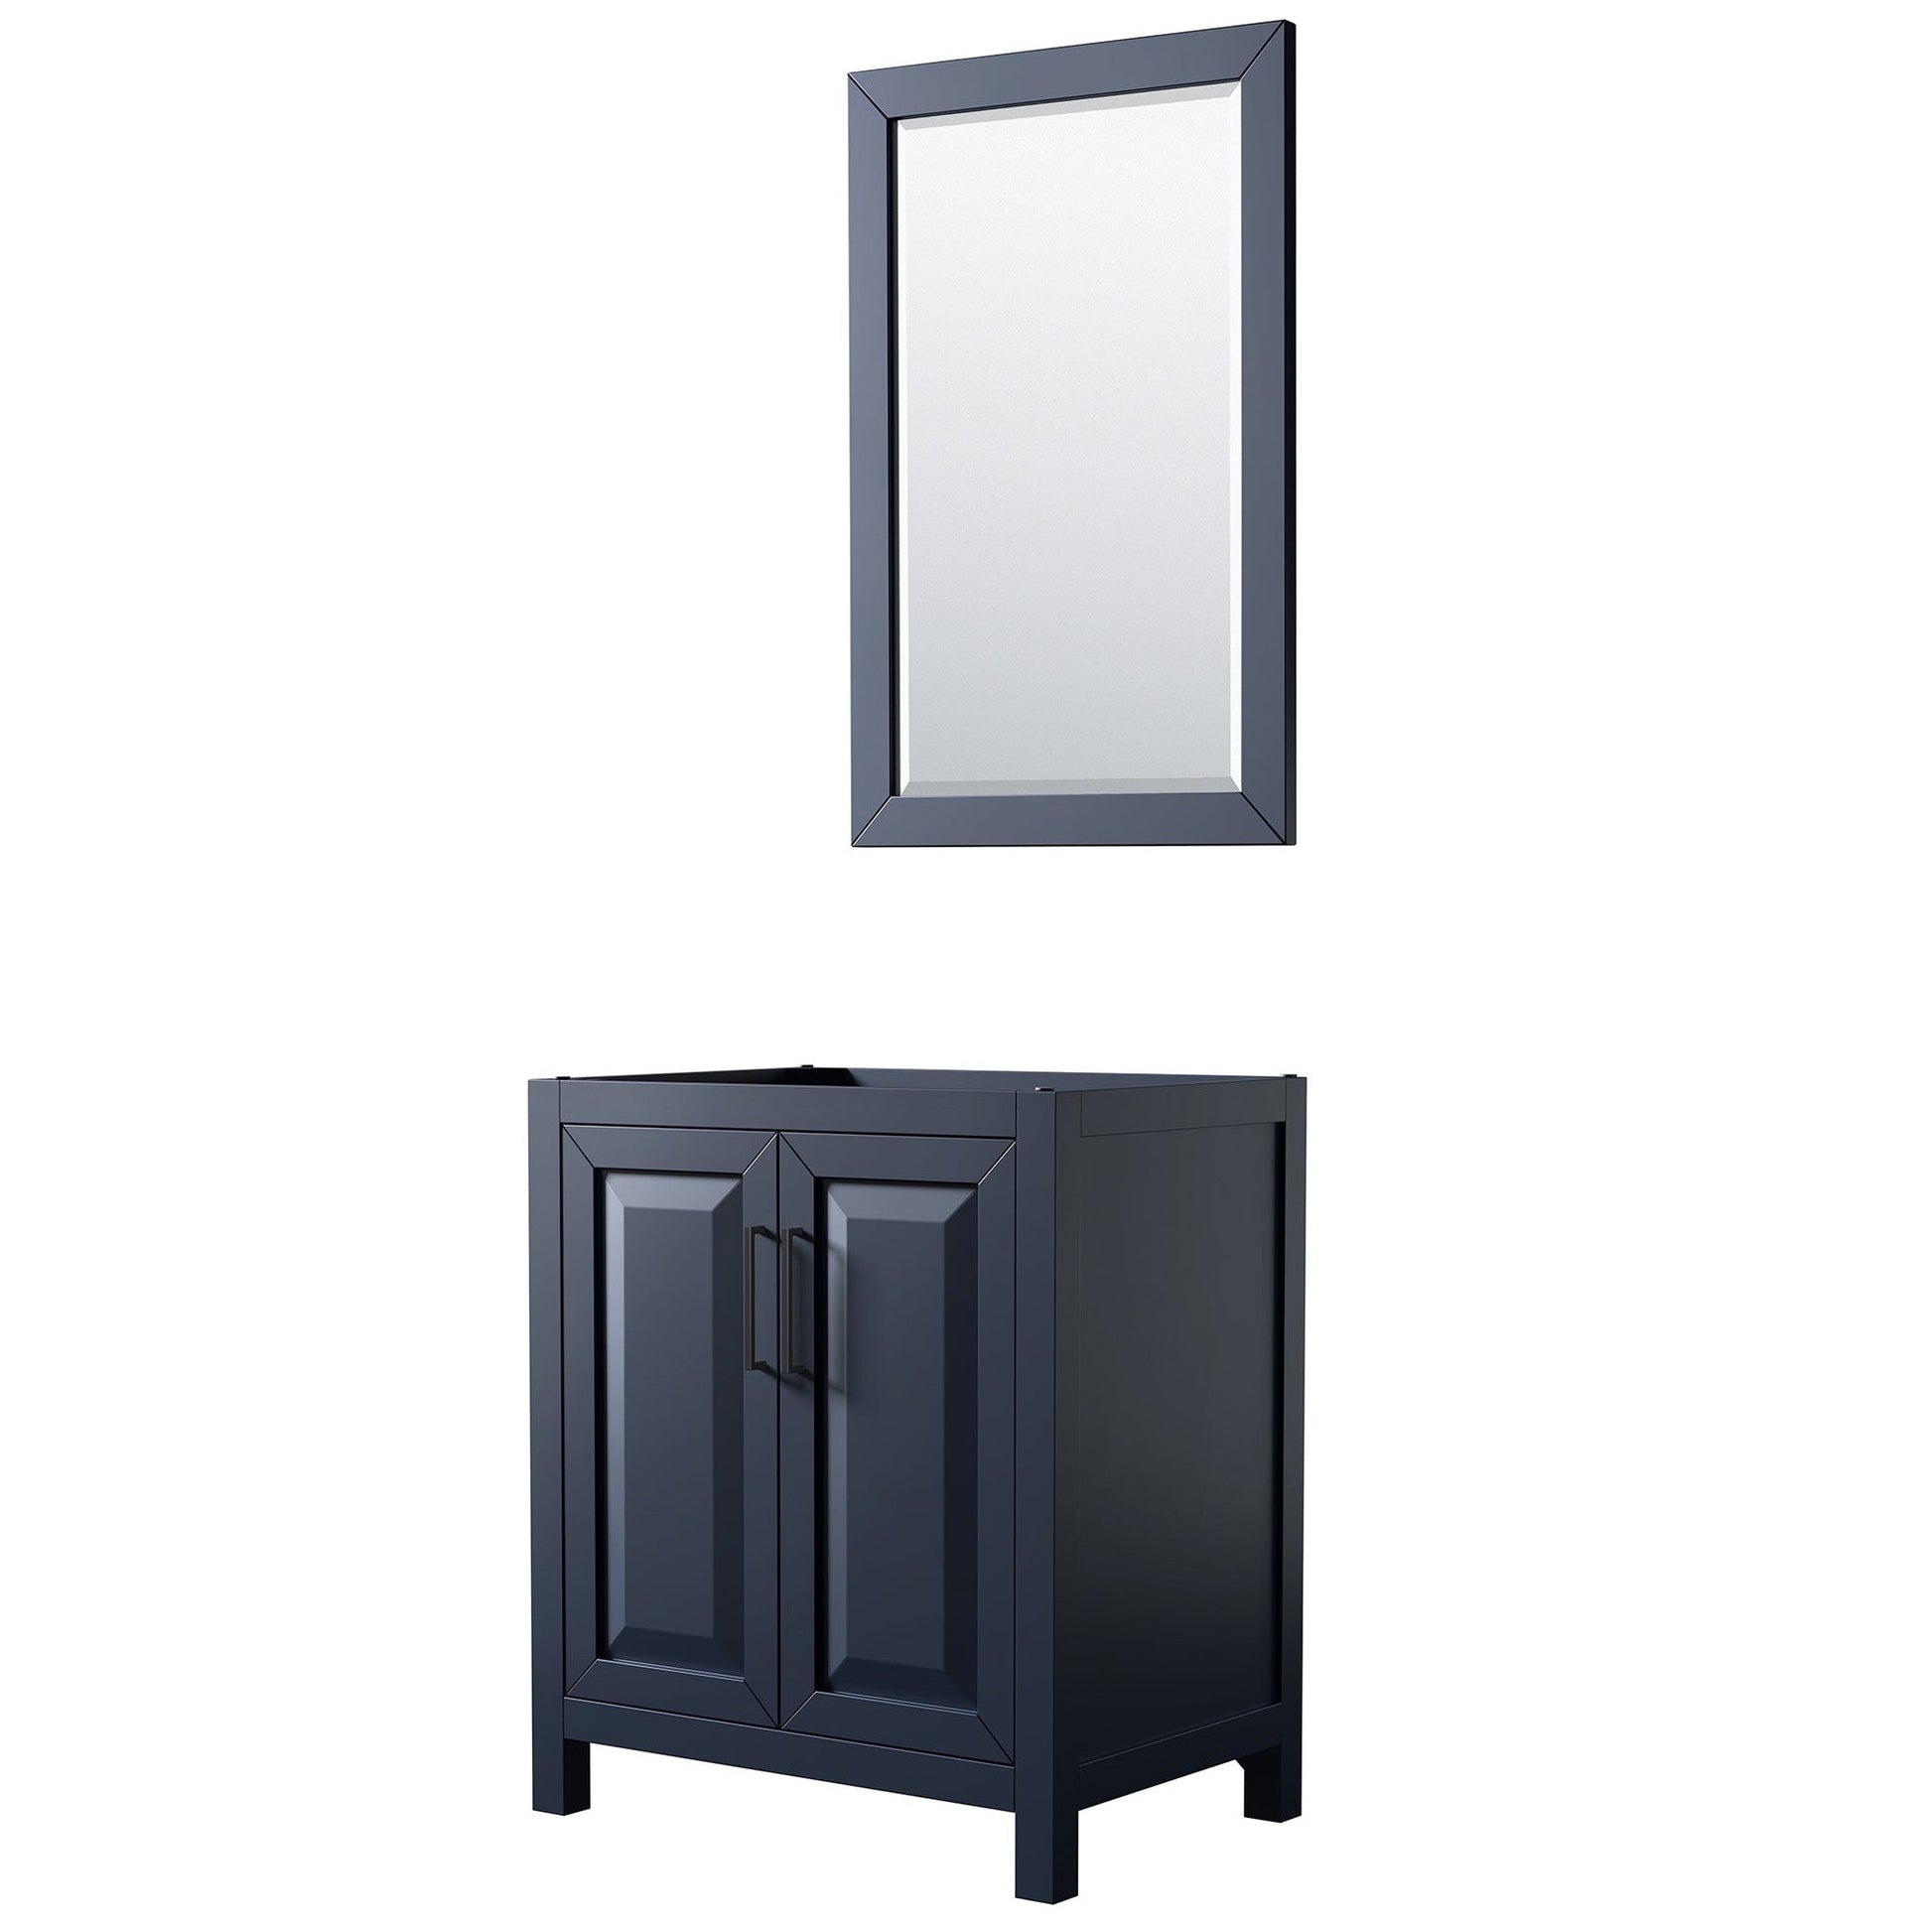 Daria 30" Single Bathroom Vanity in Dark Blue, No Countertop, No Sink, Matte Black Trim, 24" Mirror